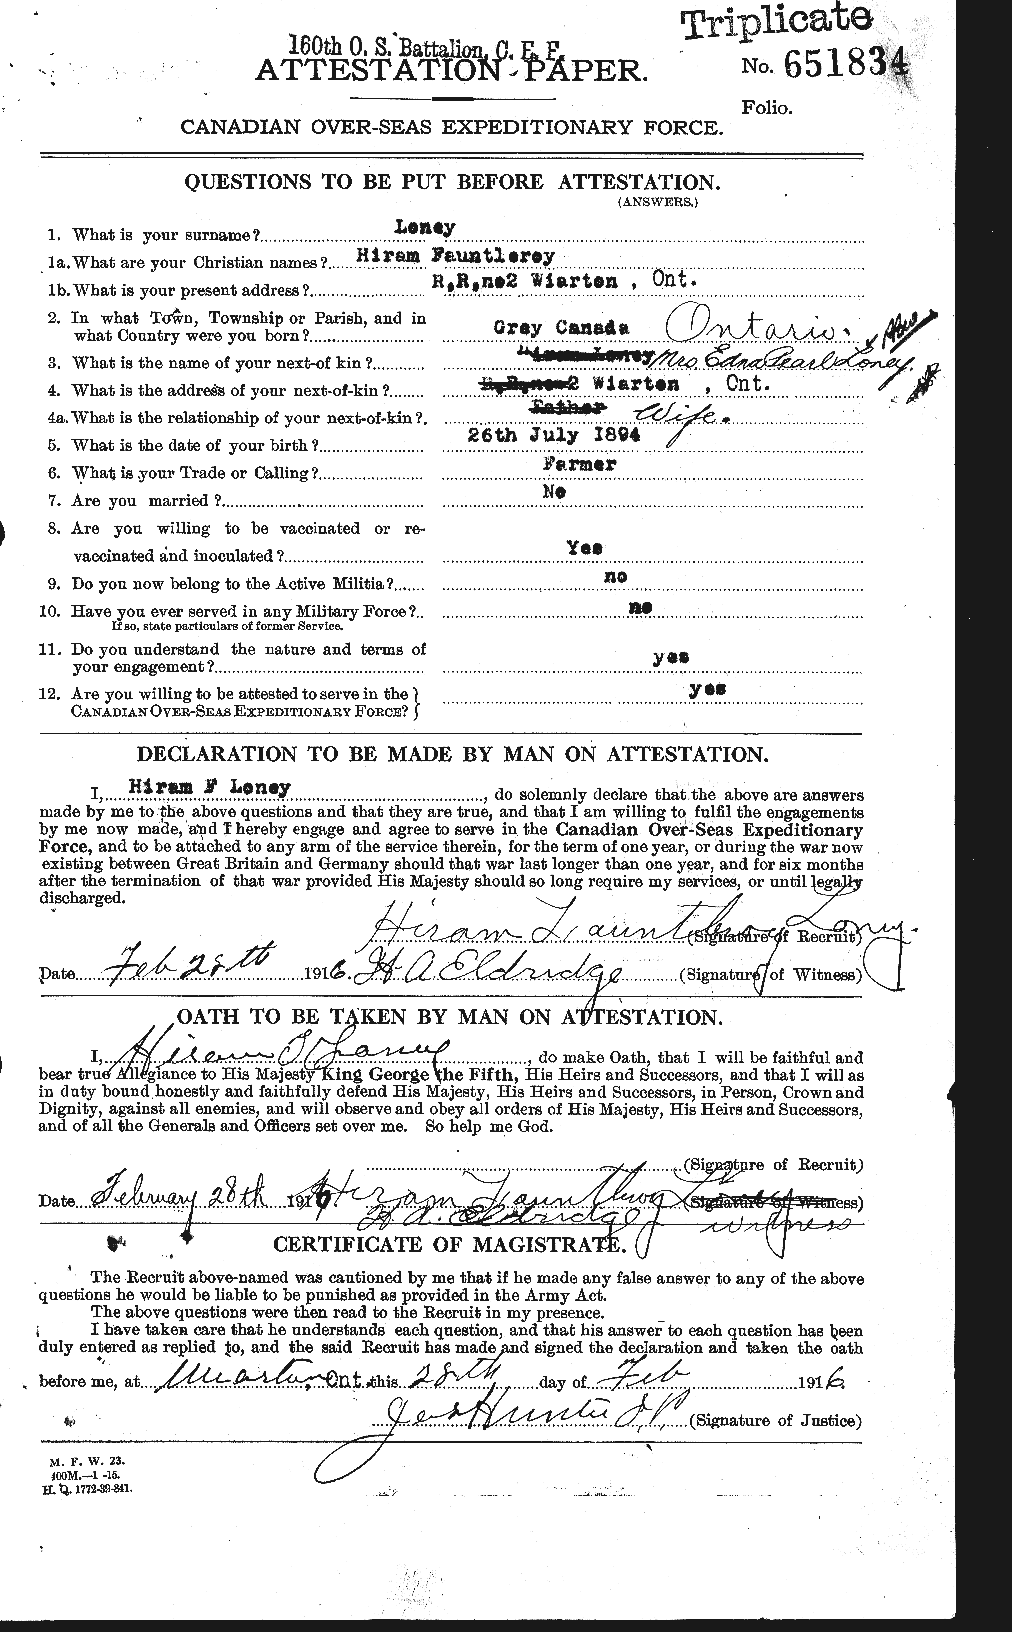 Dossiers du Personnel de la Première Guerre mondiale - CEC 464544a